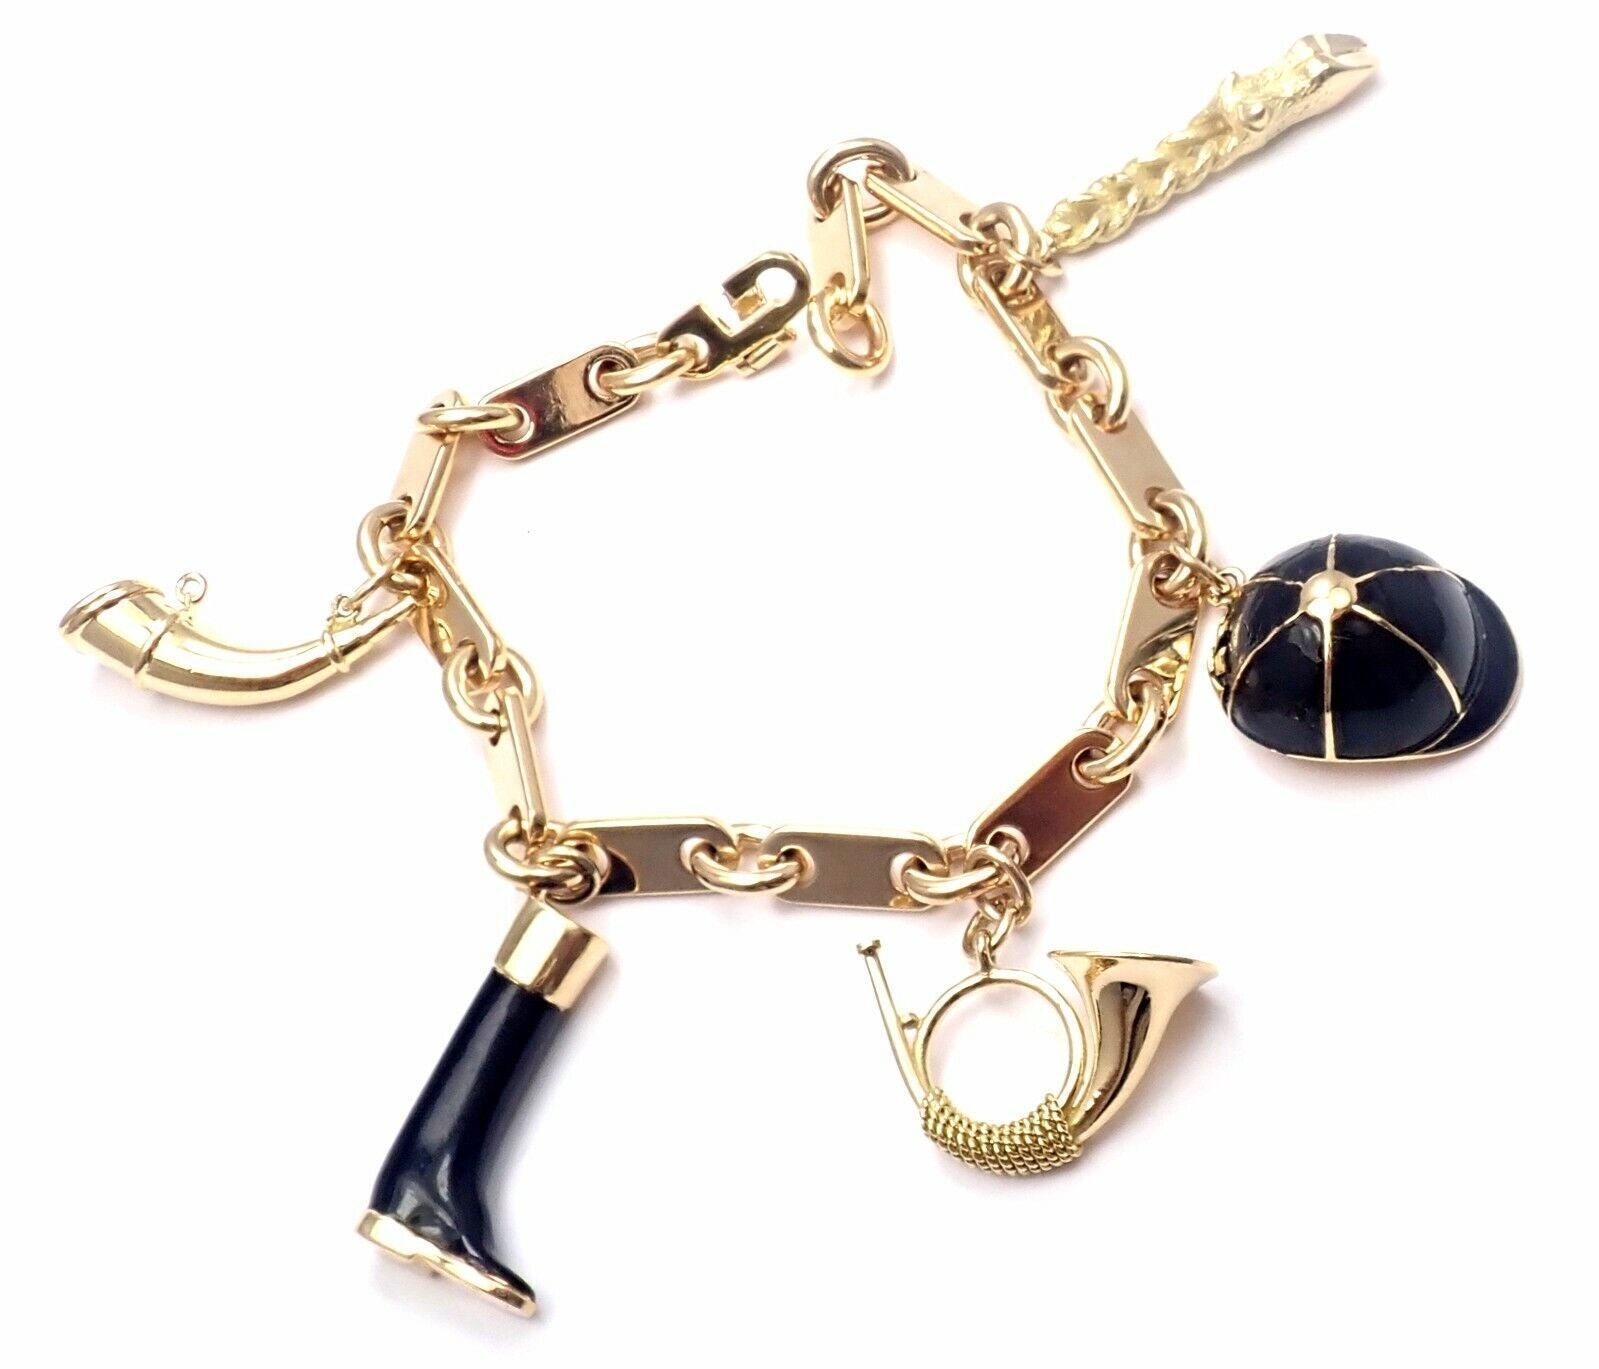 Exceptional Louis Vuitton Gold Charm Bracelet  Charm bracelet, Gold charm  bracelet, Vintage charm bracelet